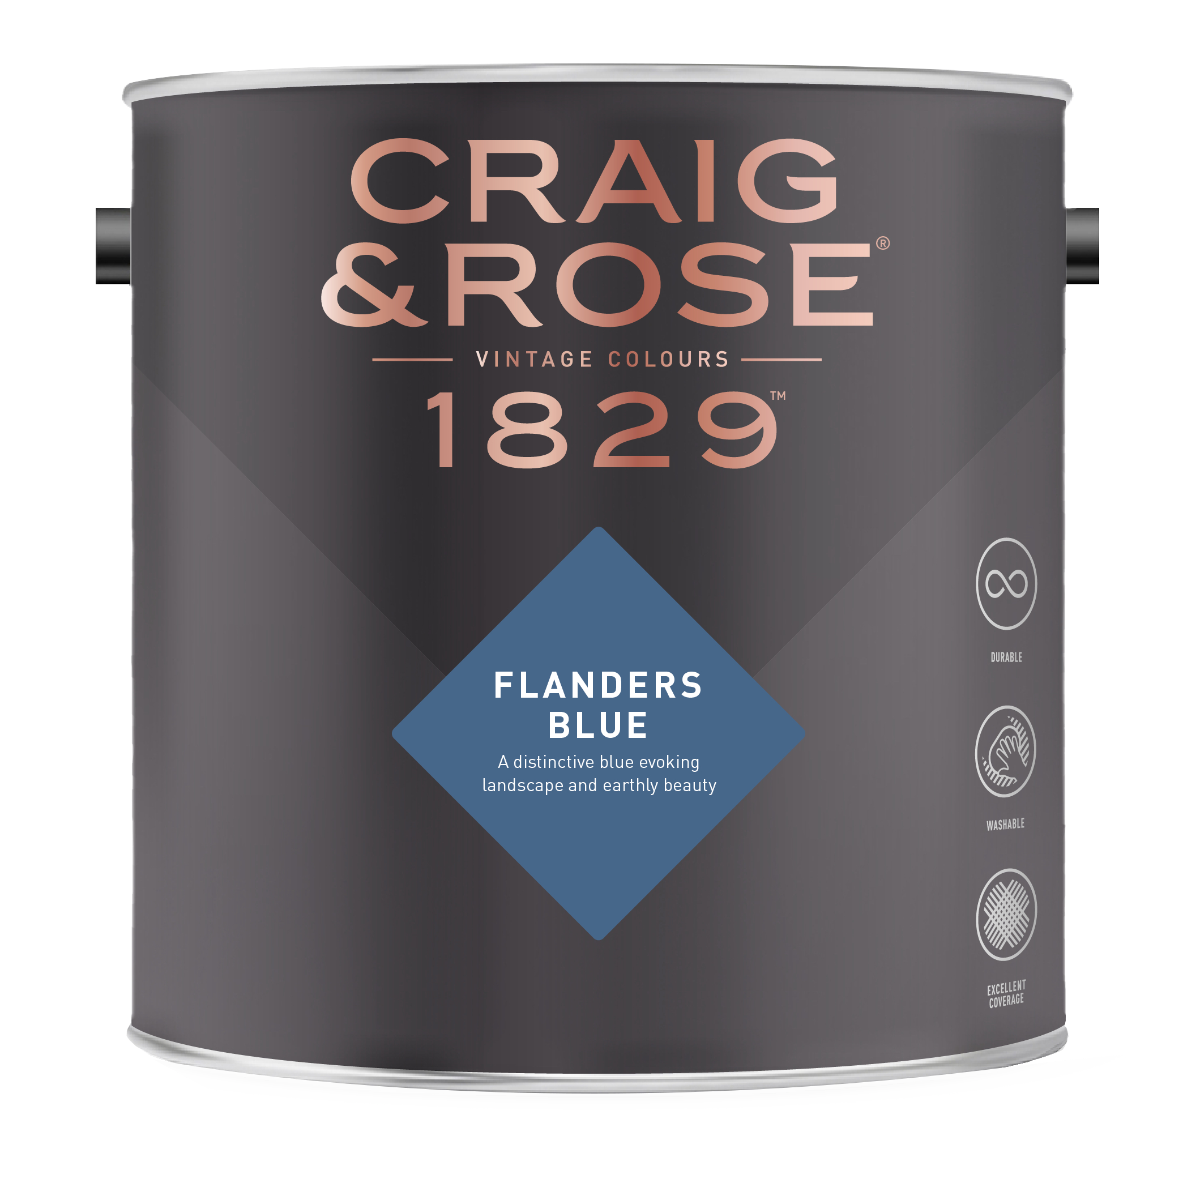 Craig & Rose 1829 Flanders Blue